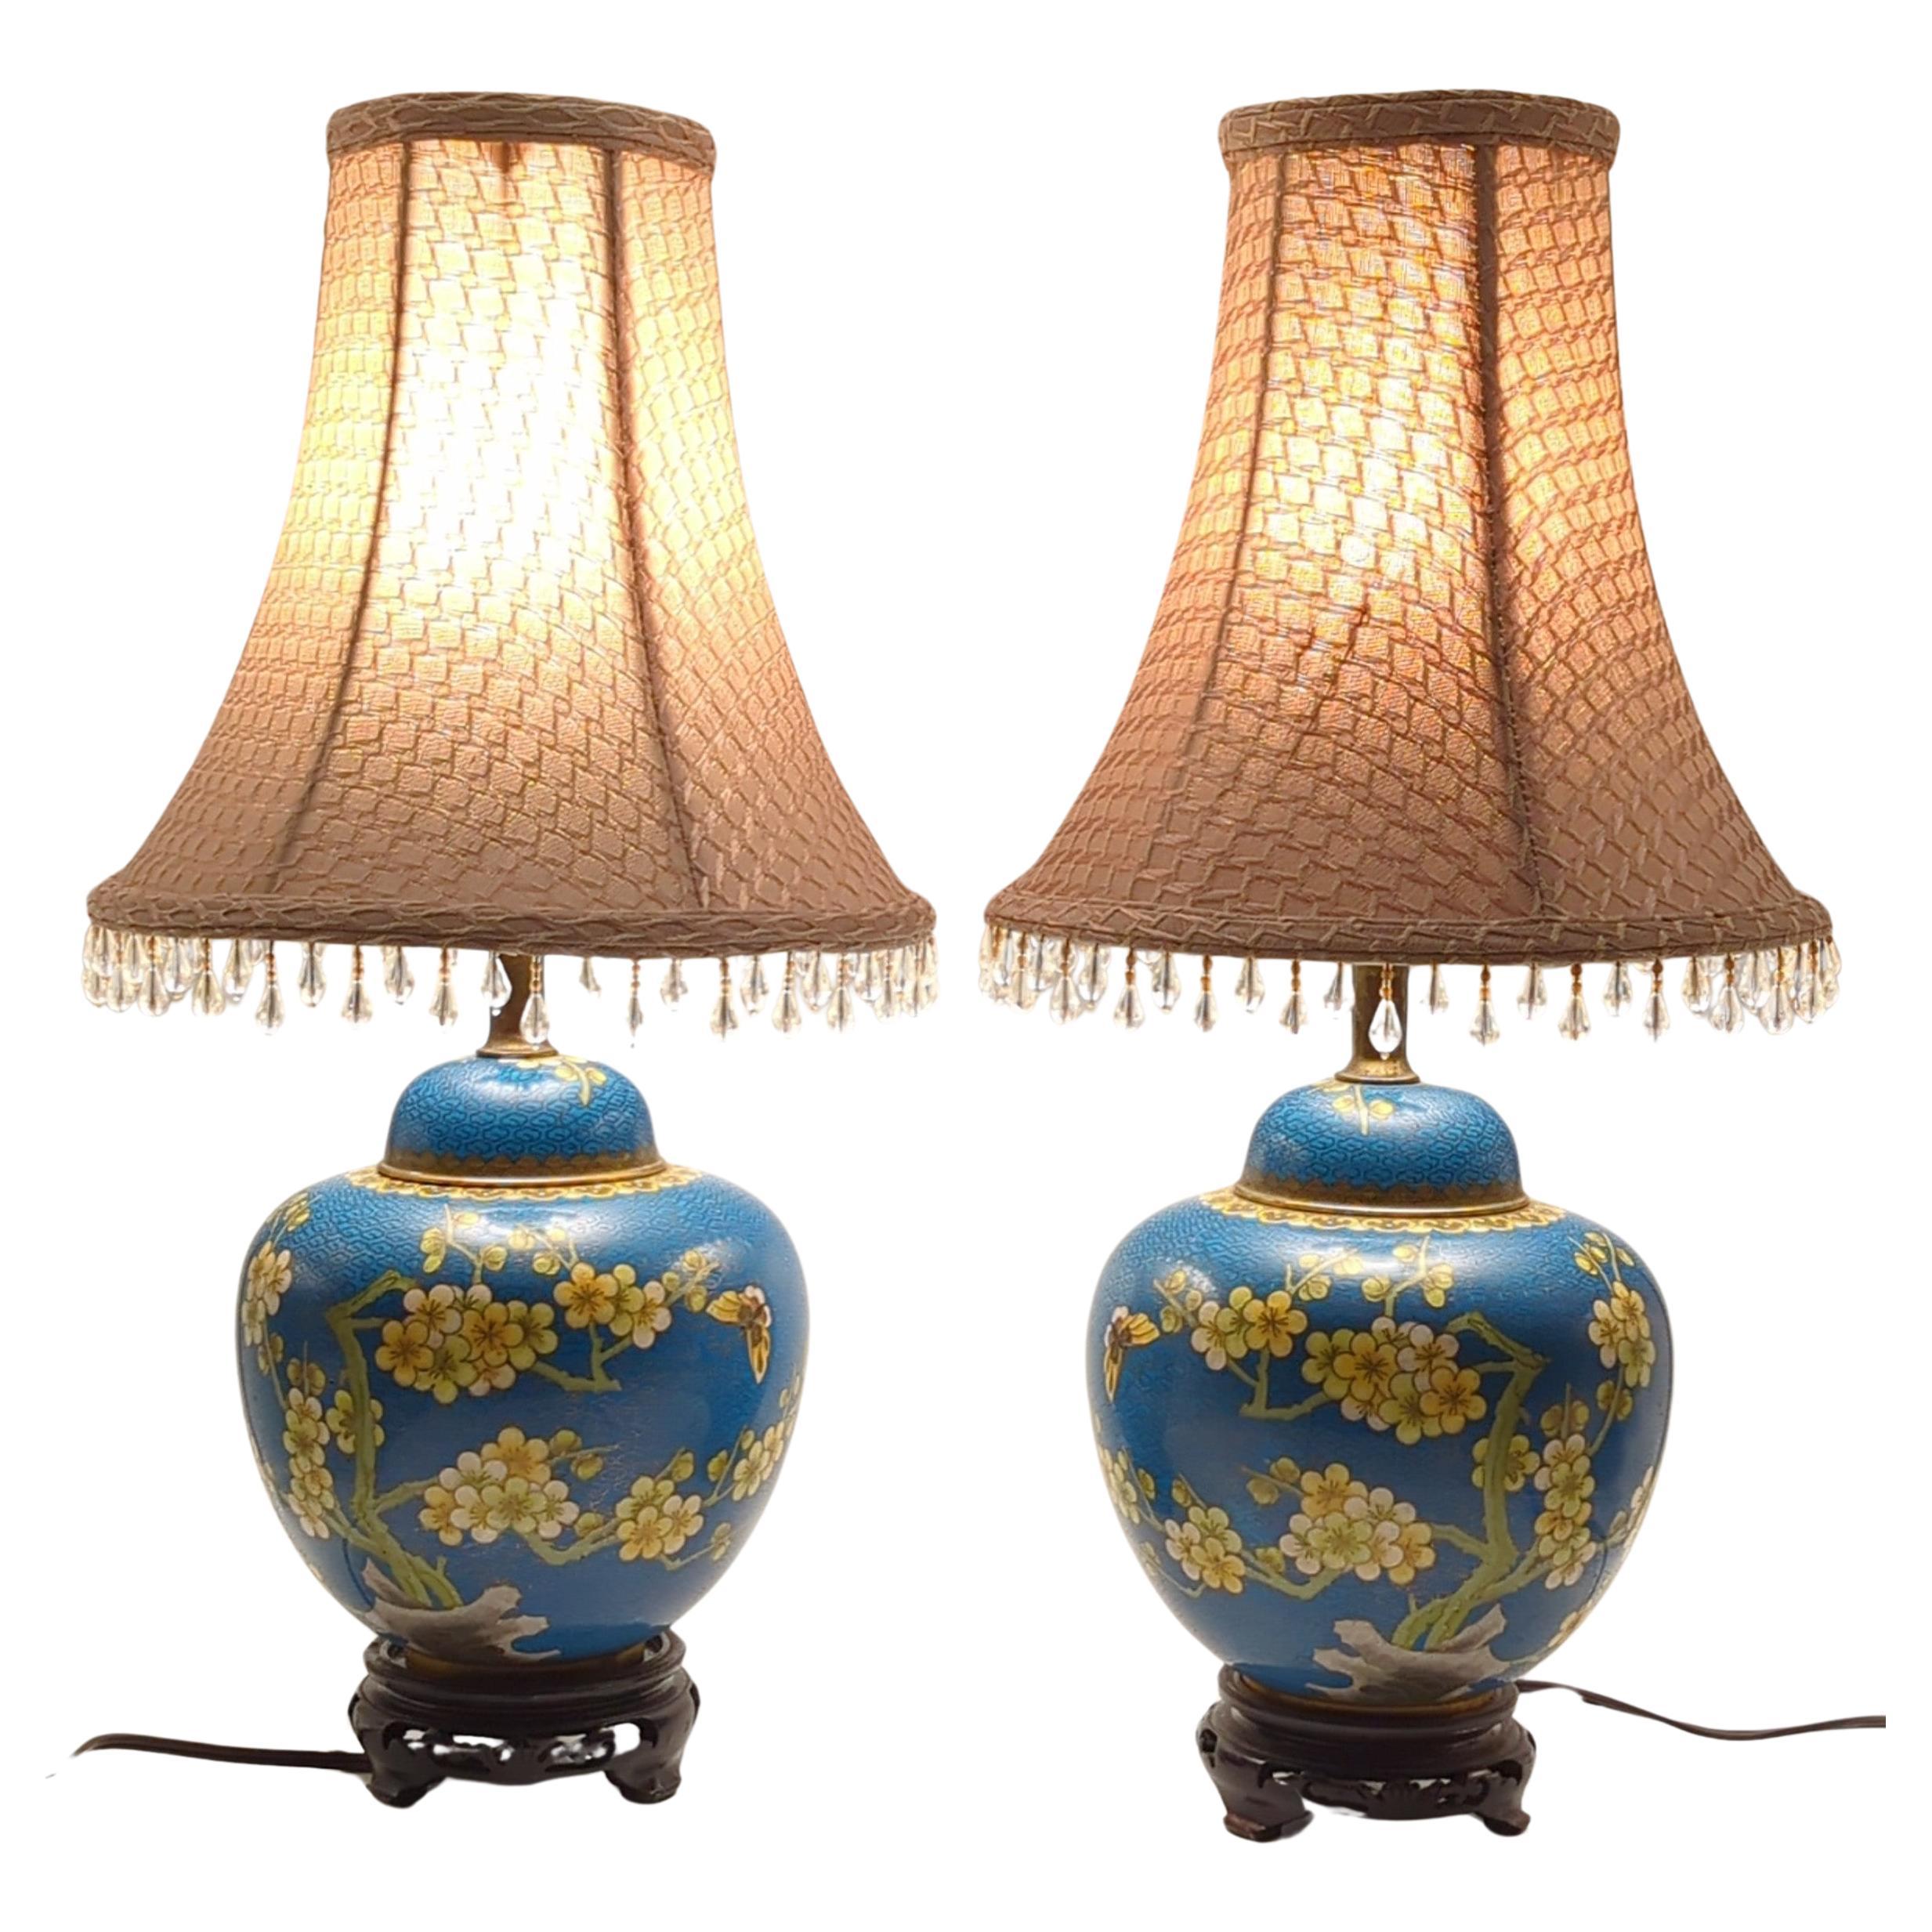 Paire d'anciennes lampes de table en cloisonné recouvertes de prunus et de gingembre, en vermeil, datant du 19e siècle.